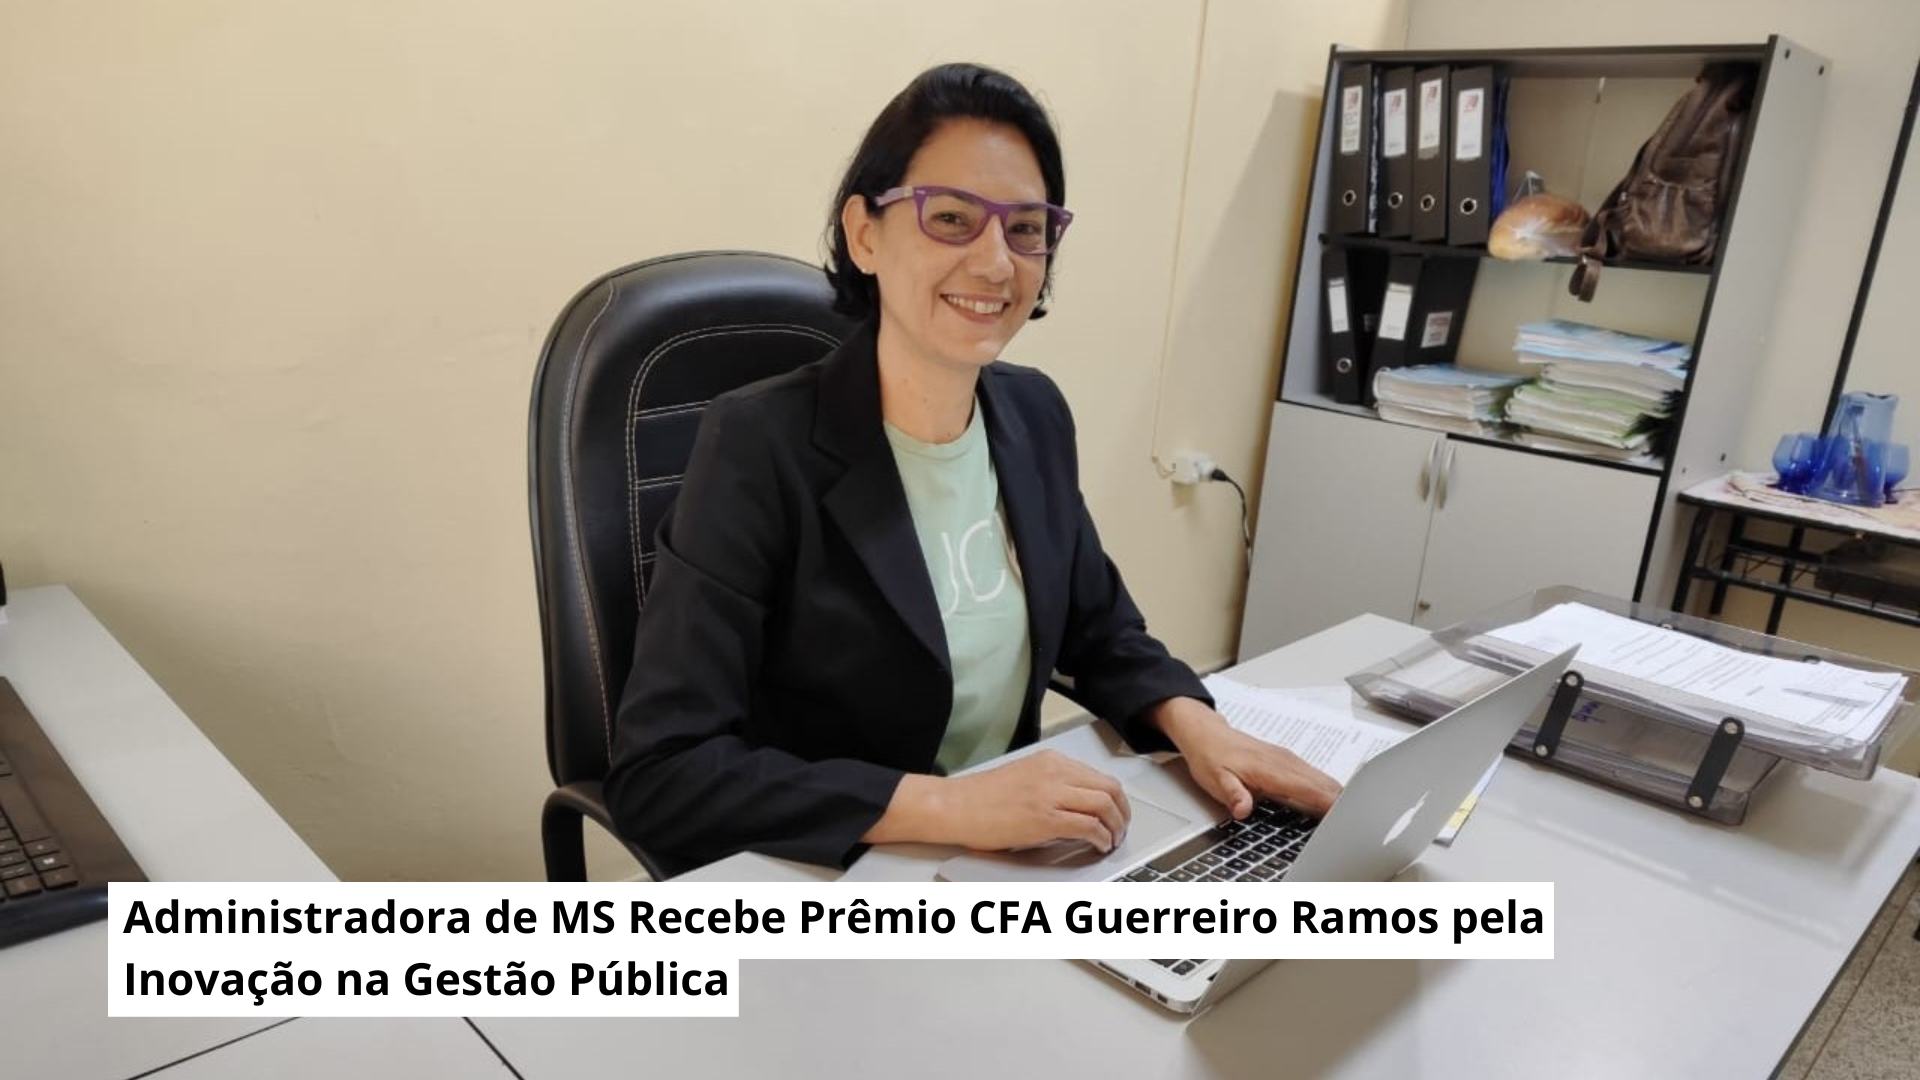 Você está visualizando atualmente Administradora de MS Recebe Prêmio CFA Guerreiro Ramos pela Inovação na Gestão Pública